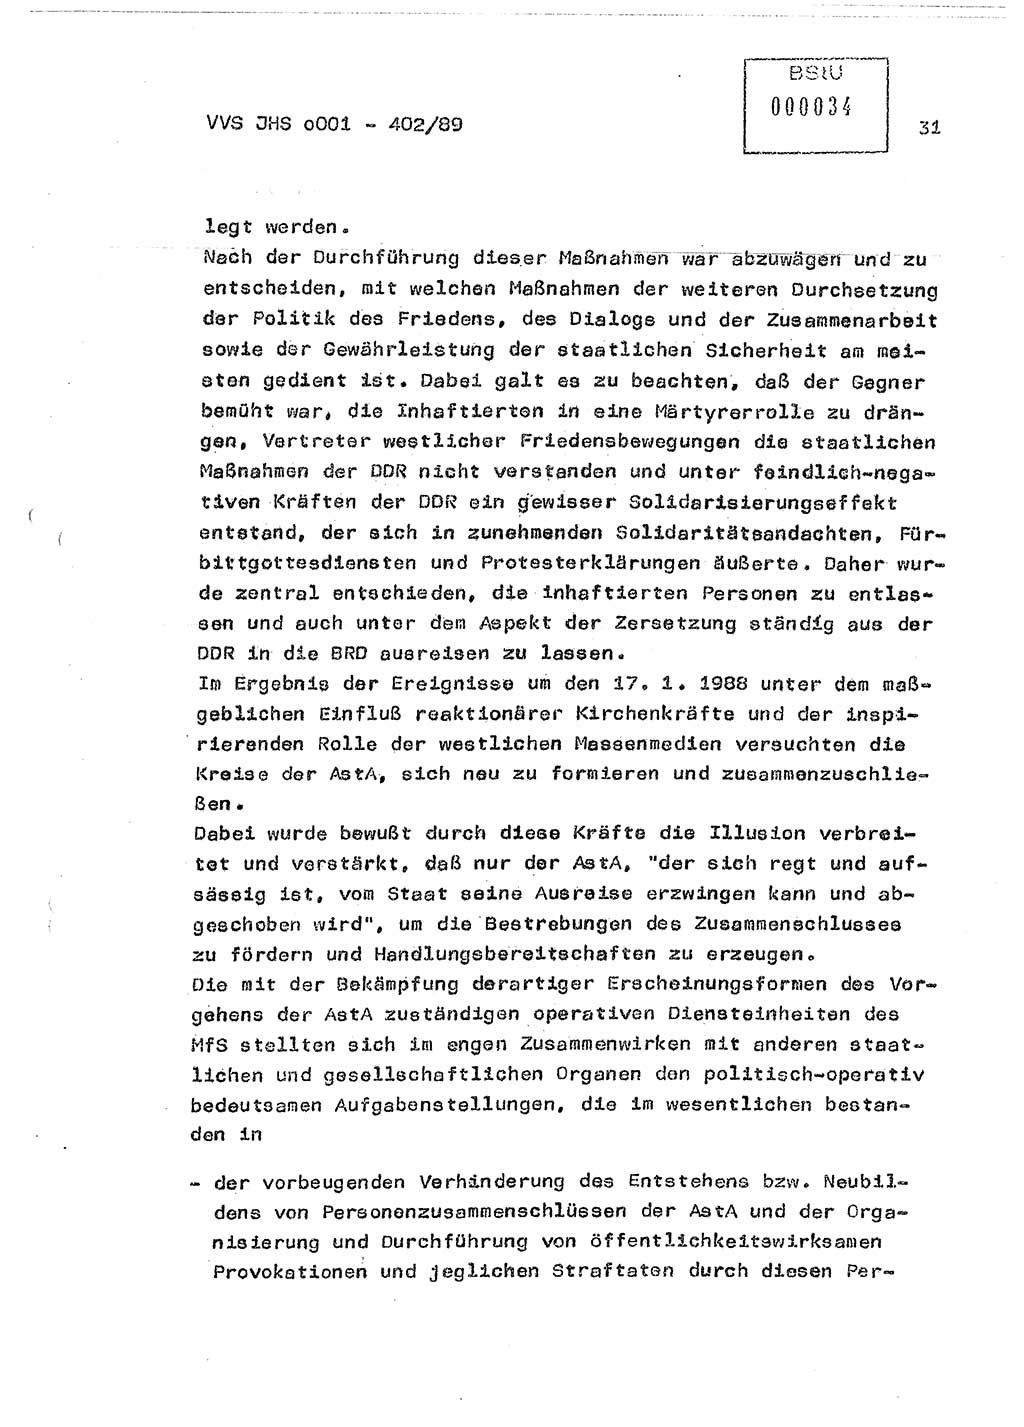 Diplomarbeit Major Günter Müller (HA Ⅸ/9), Ministerium für Staatssicherheit (MfS) [Deutsche Demokratische Republik (DDR)], Juristische Hochschule (JHS), Vertrauliche Verschlußsache (VVS) o001-402/89, Potsdam 1989, Seite 31 (Dipl.-Arb. MfS DDR JHS VVS o001-402/89 1989, S. 31)